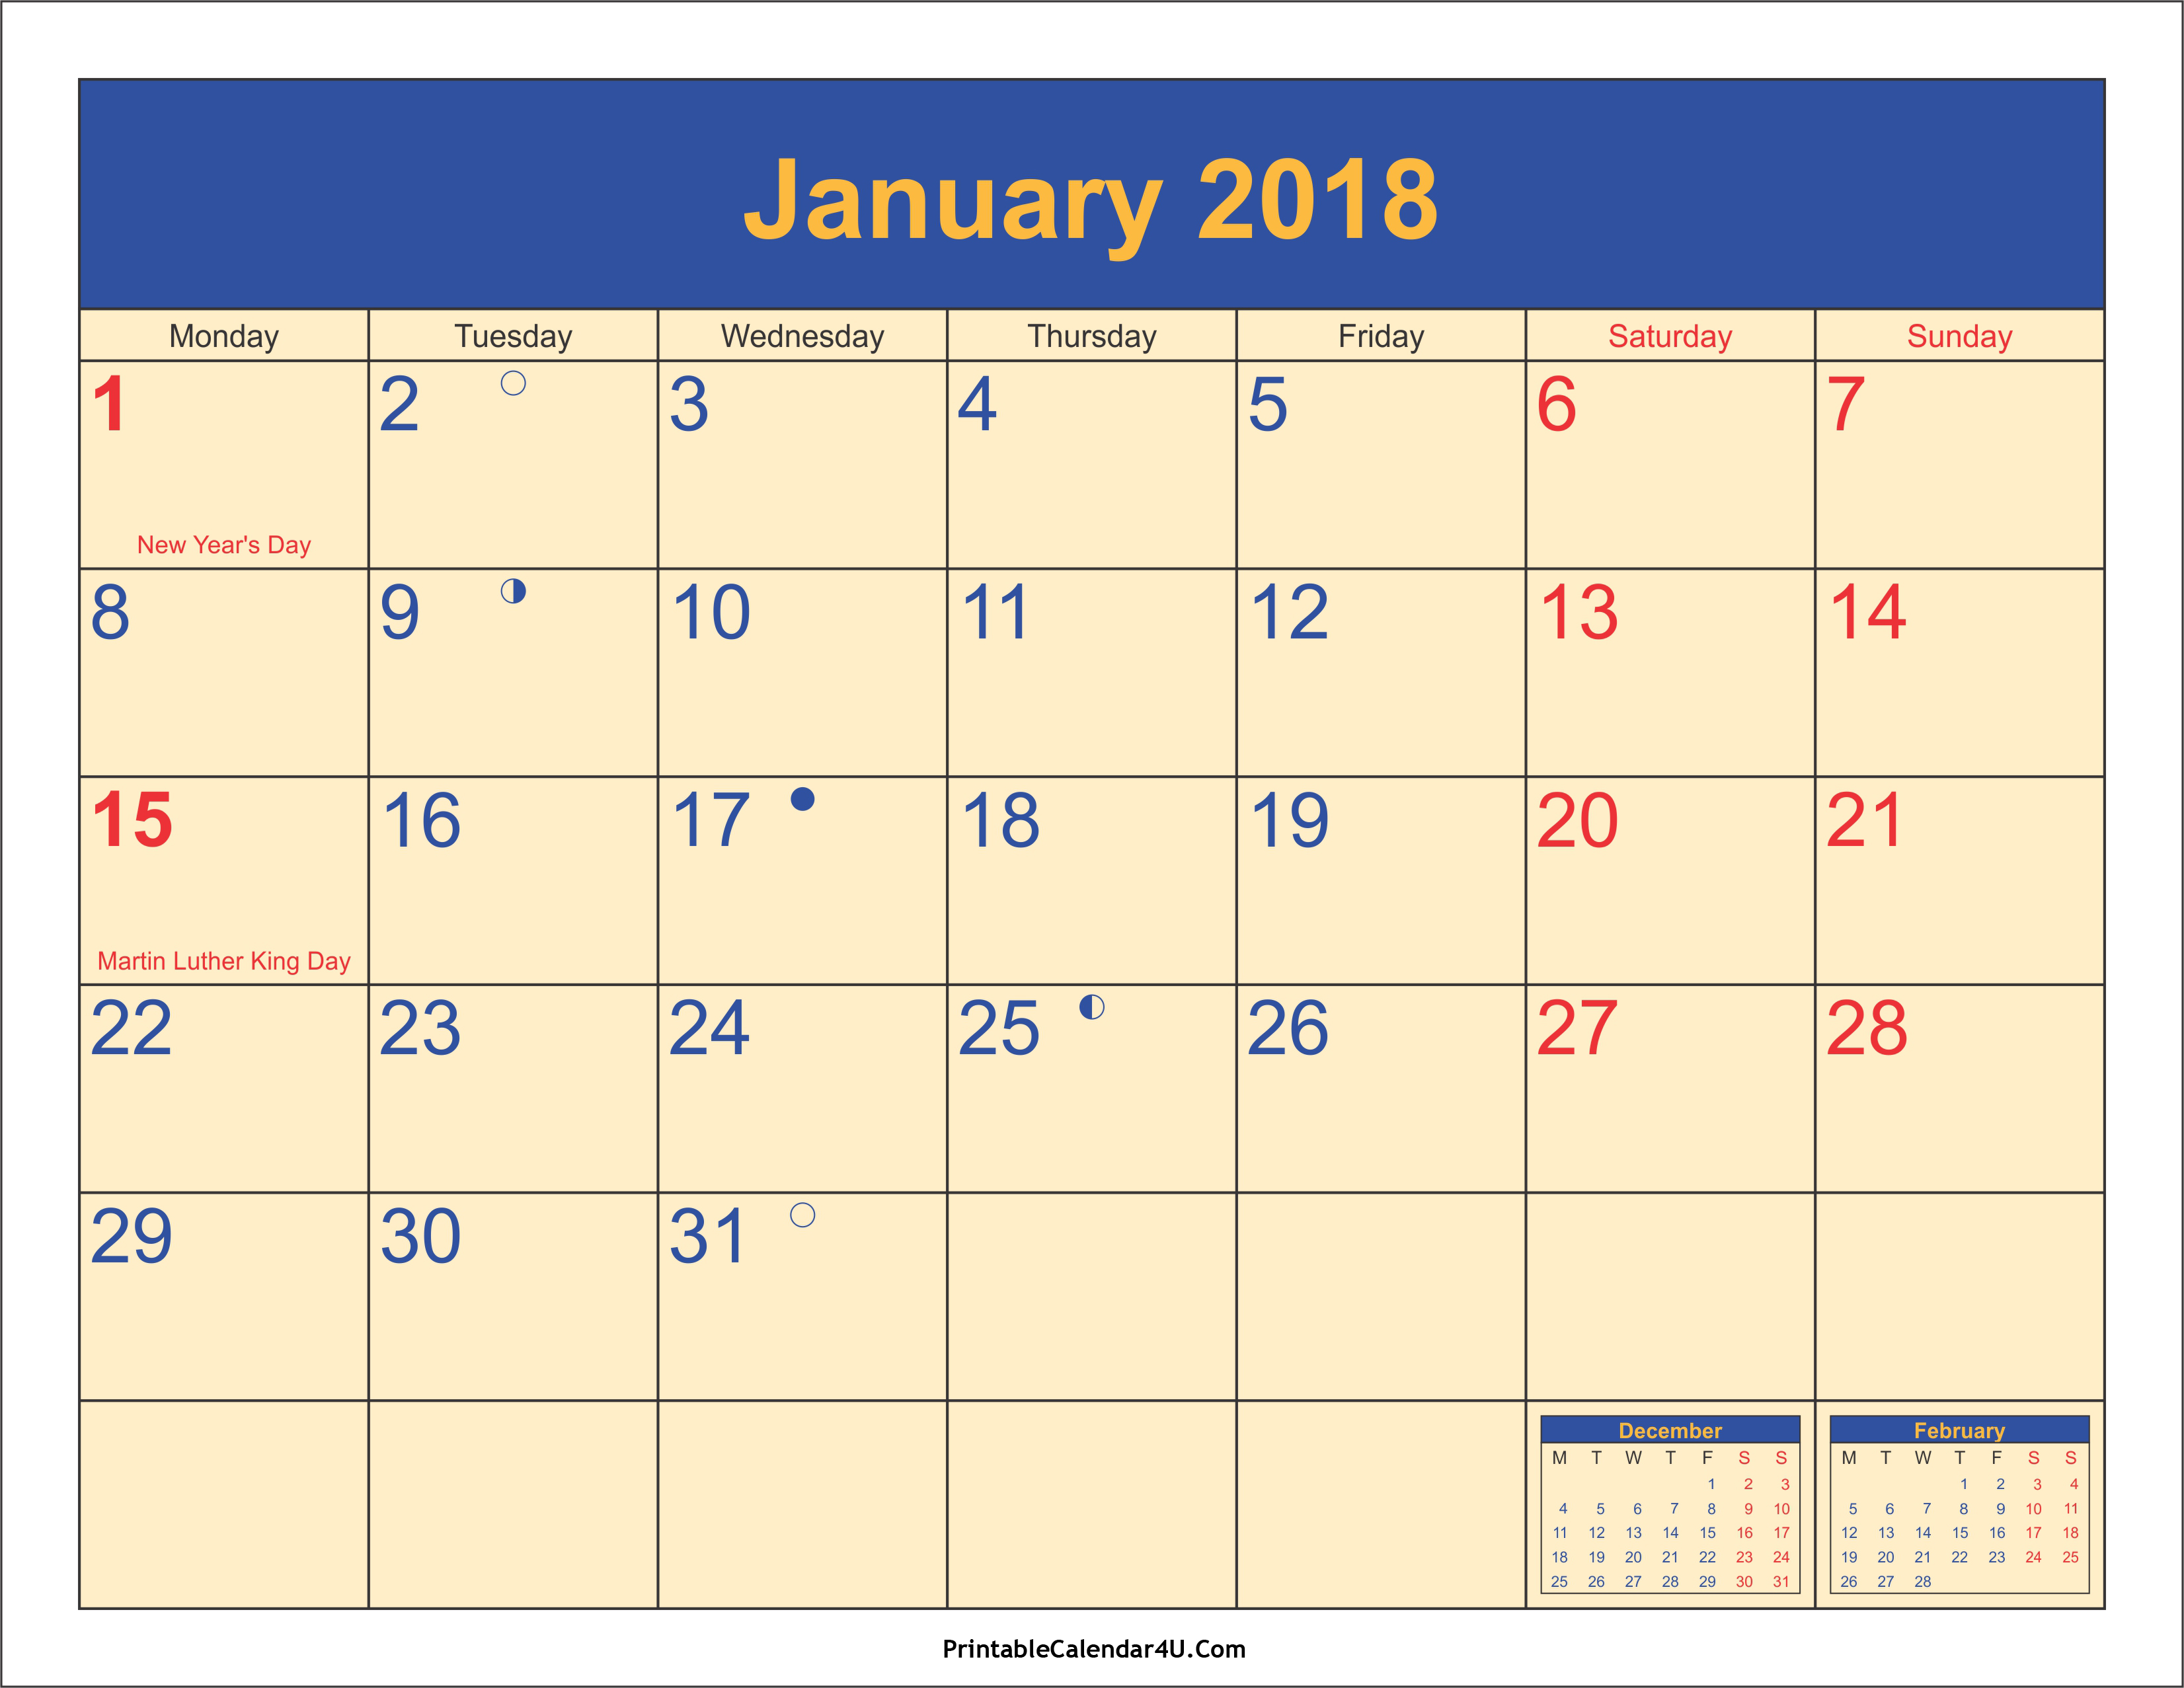 January 2018 Calendar Printable | 2017 calendar with holidays